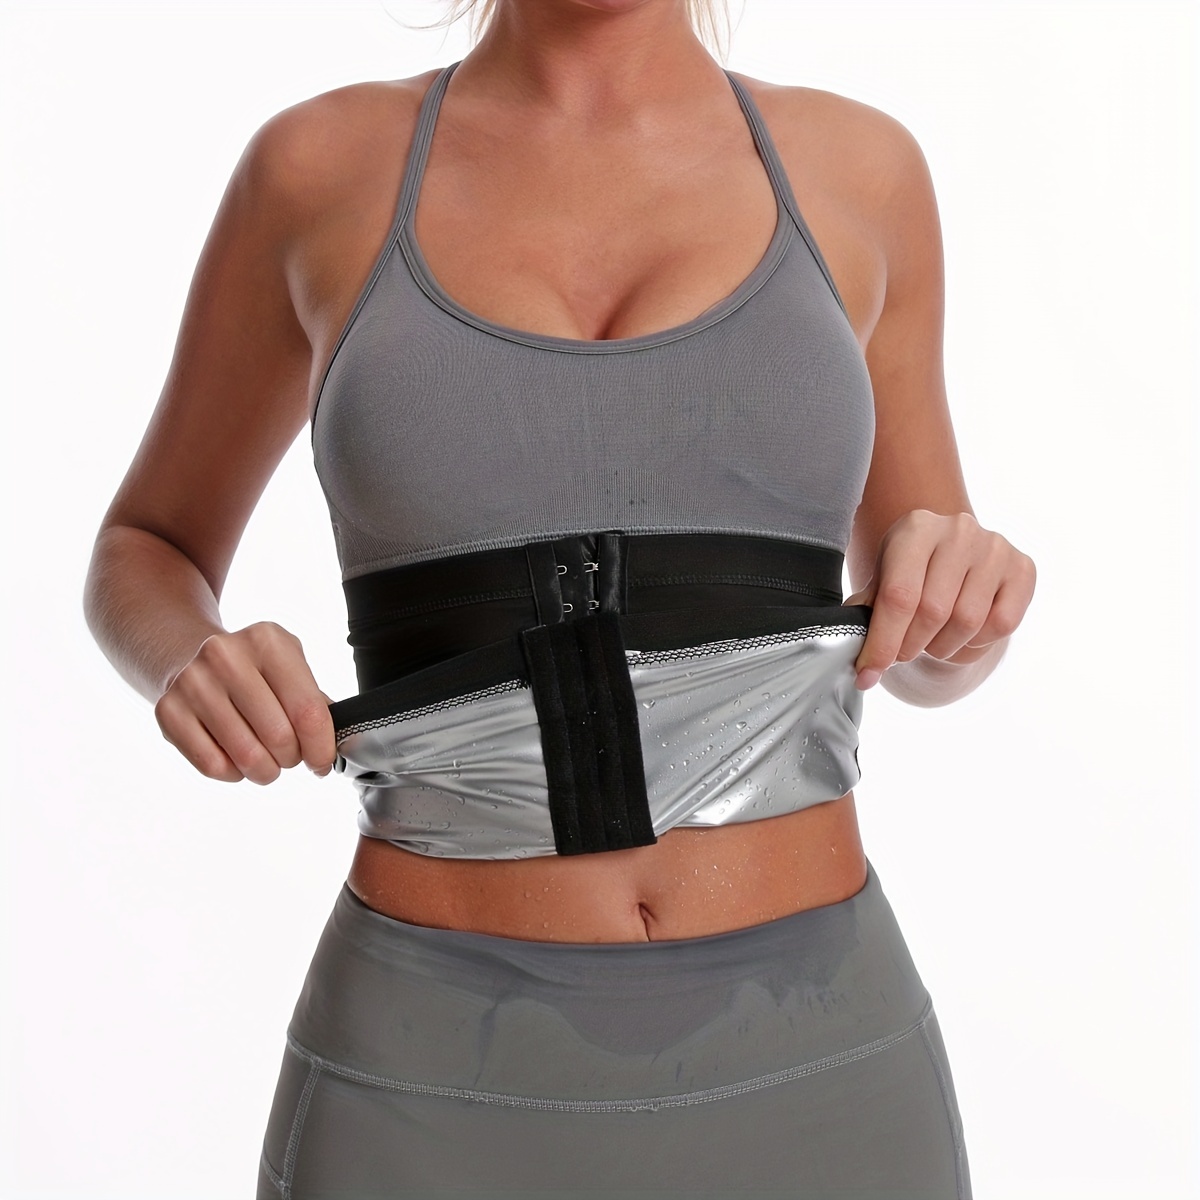 Body-fitting Sports Belt Women's Zipper Tummy Shapewear Waist Trimmer Belt  Trainer Slimming Cincher Body Shape